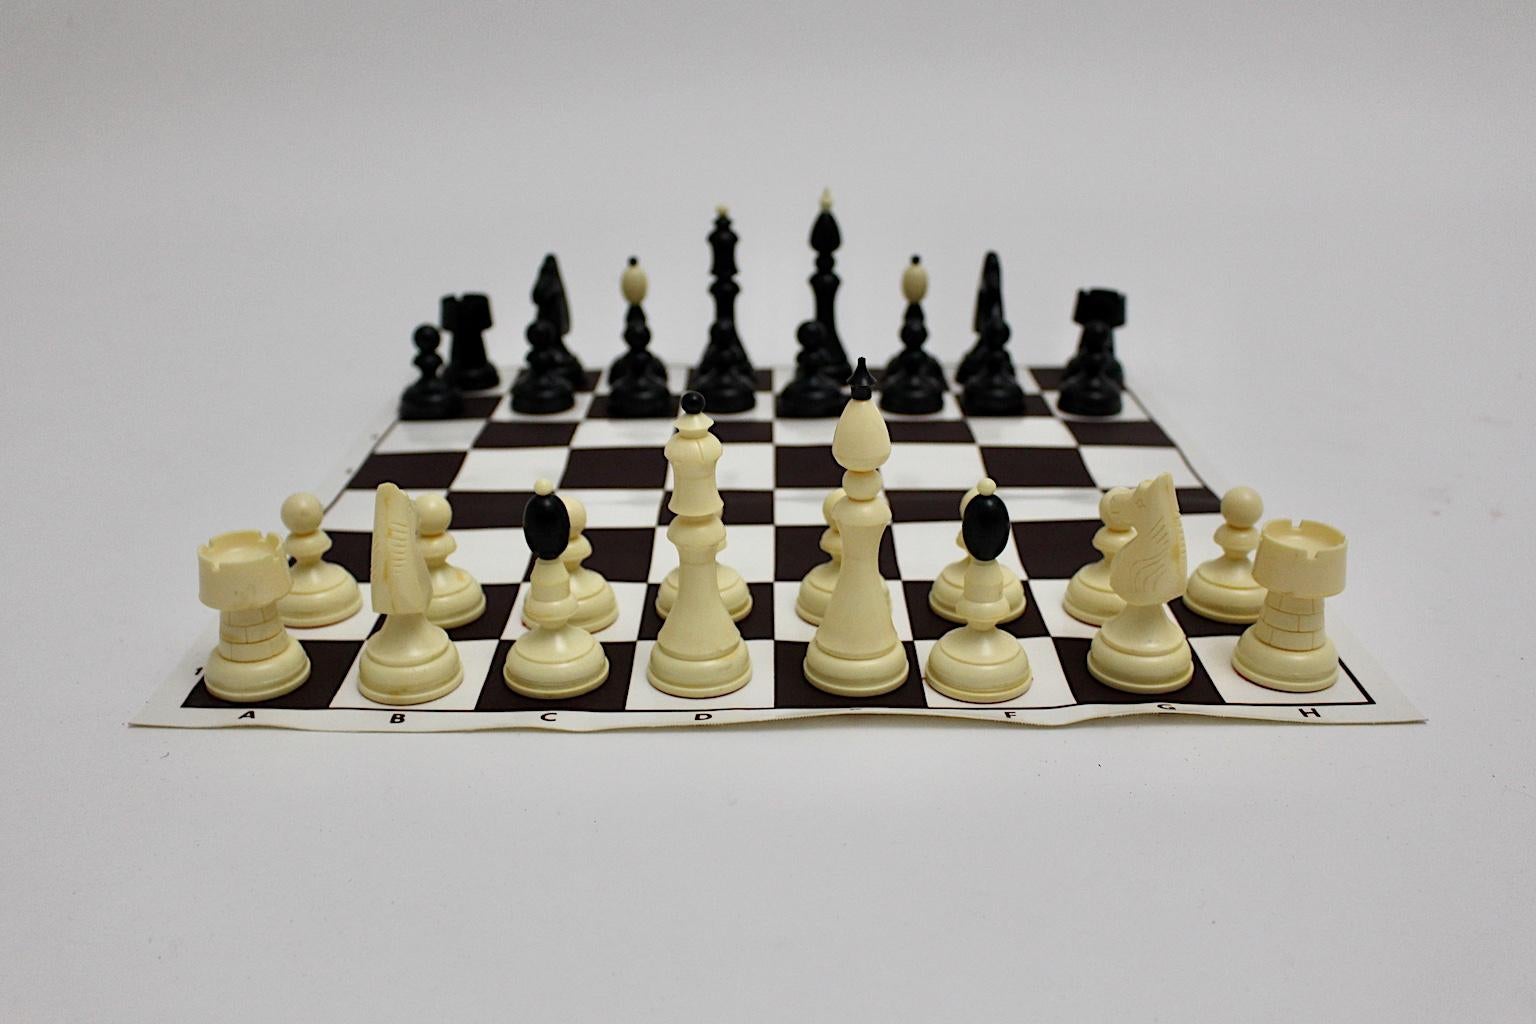 Modernes Vintage-Schach aus schwarzem und weißem Kunststoff Österreich 1970er Jahre,
Das Spielbrett aus Kunststoff ist flexibel und lässt sich daher rollen.
Auch die Figuren wurden aus Plastik hergestellt, die Höhe des Königs beträgt 11 cm.
Keine